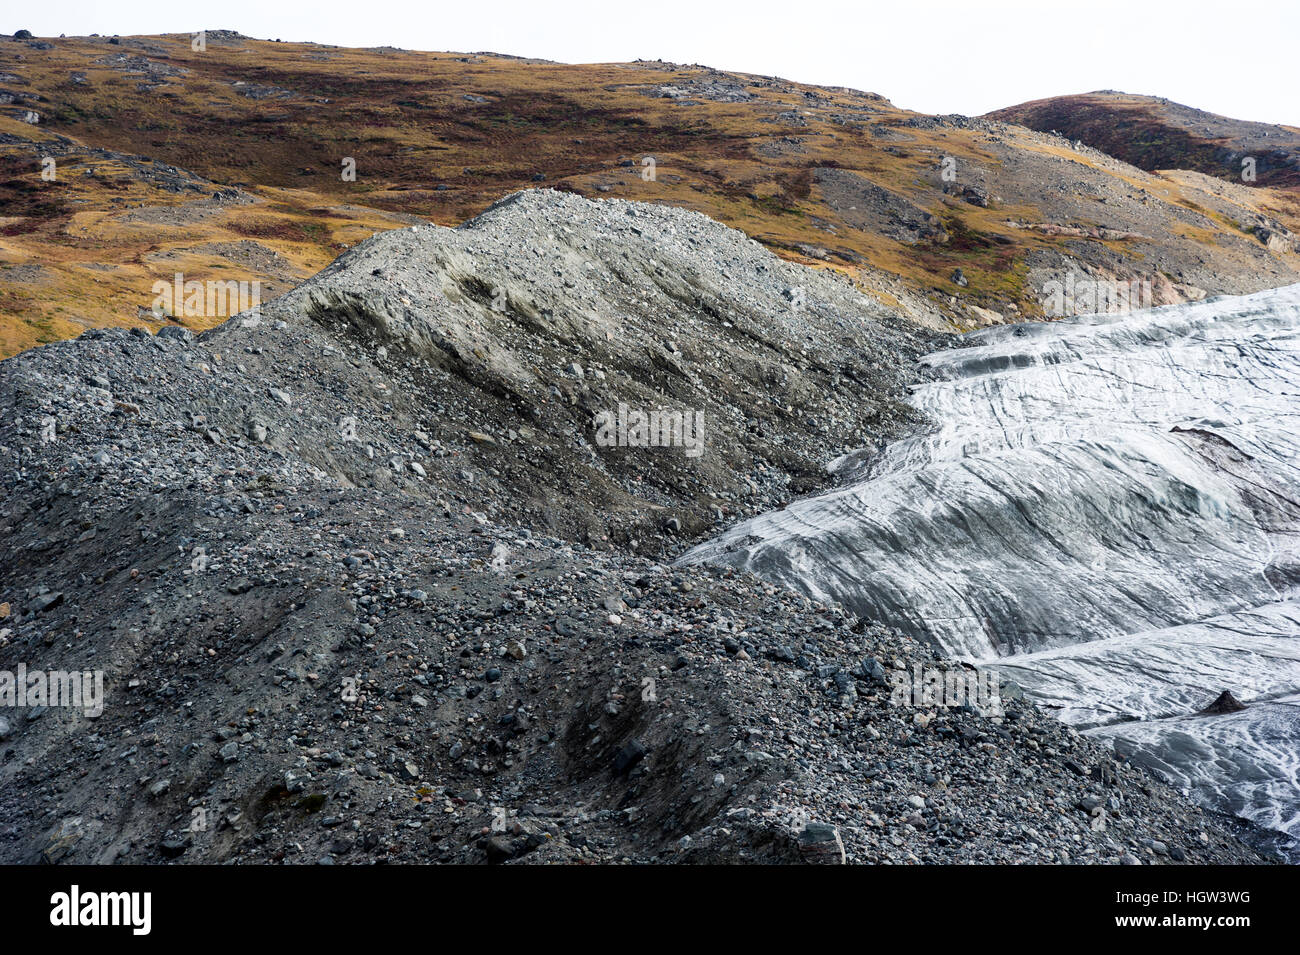 Un montón de rocas, sedimentos y limo residuo depositado por el borde de un glaciar. Foto de stock